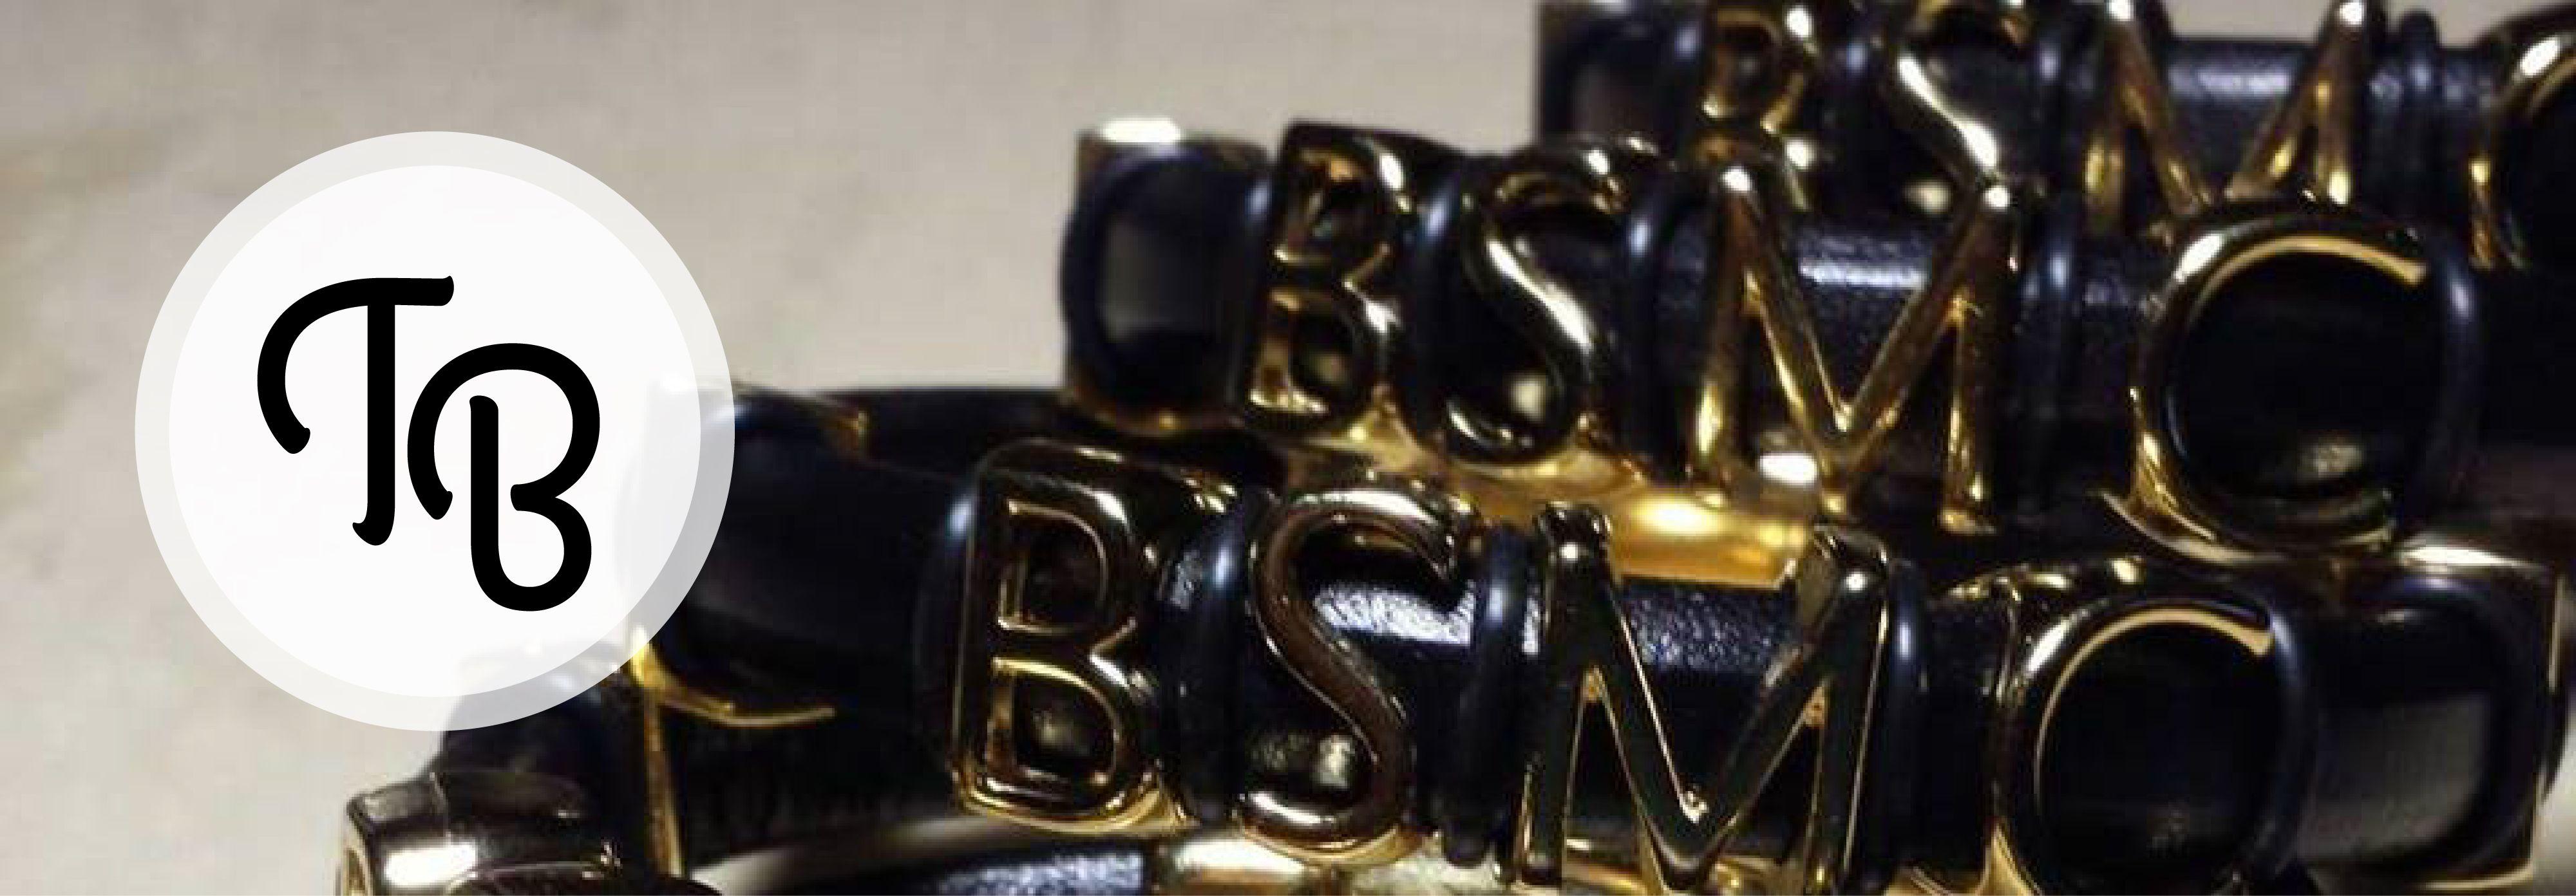 BSMC Logo - BSMC bracelet with logo | Theme Bracelet